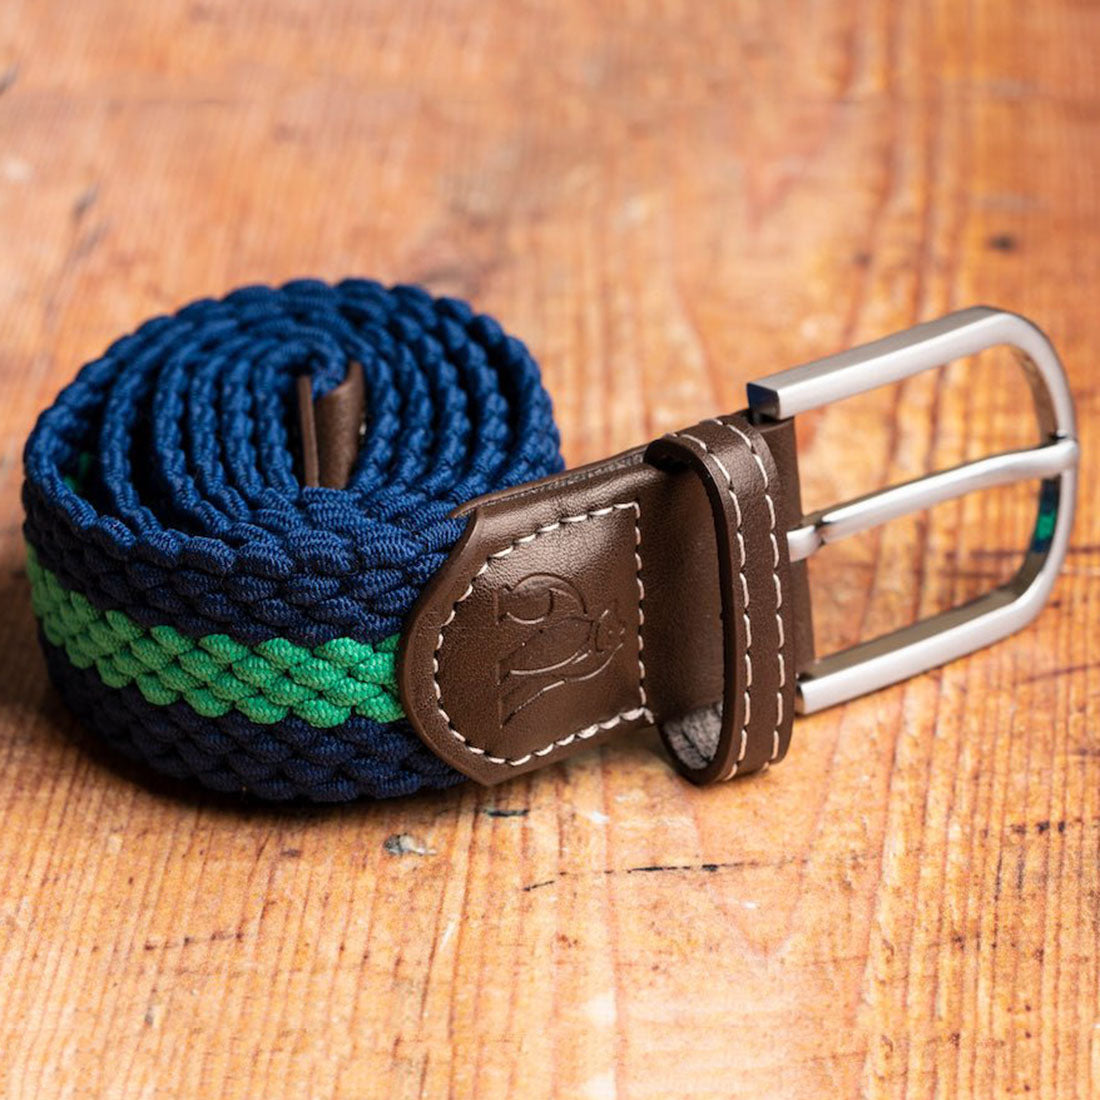 Woven Belt - Blue / Green Stripe